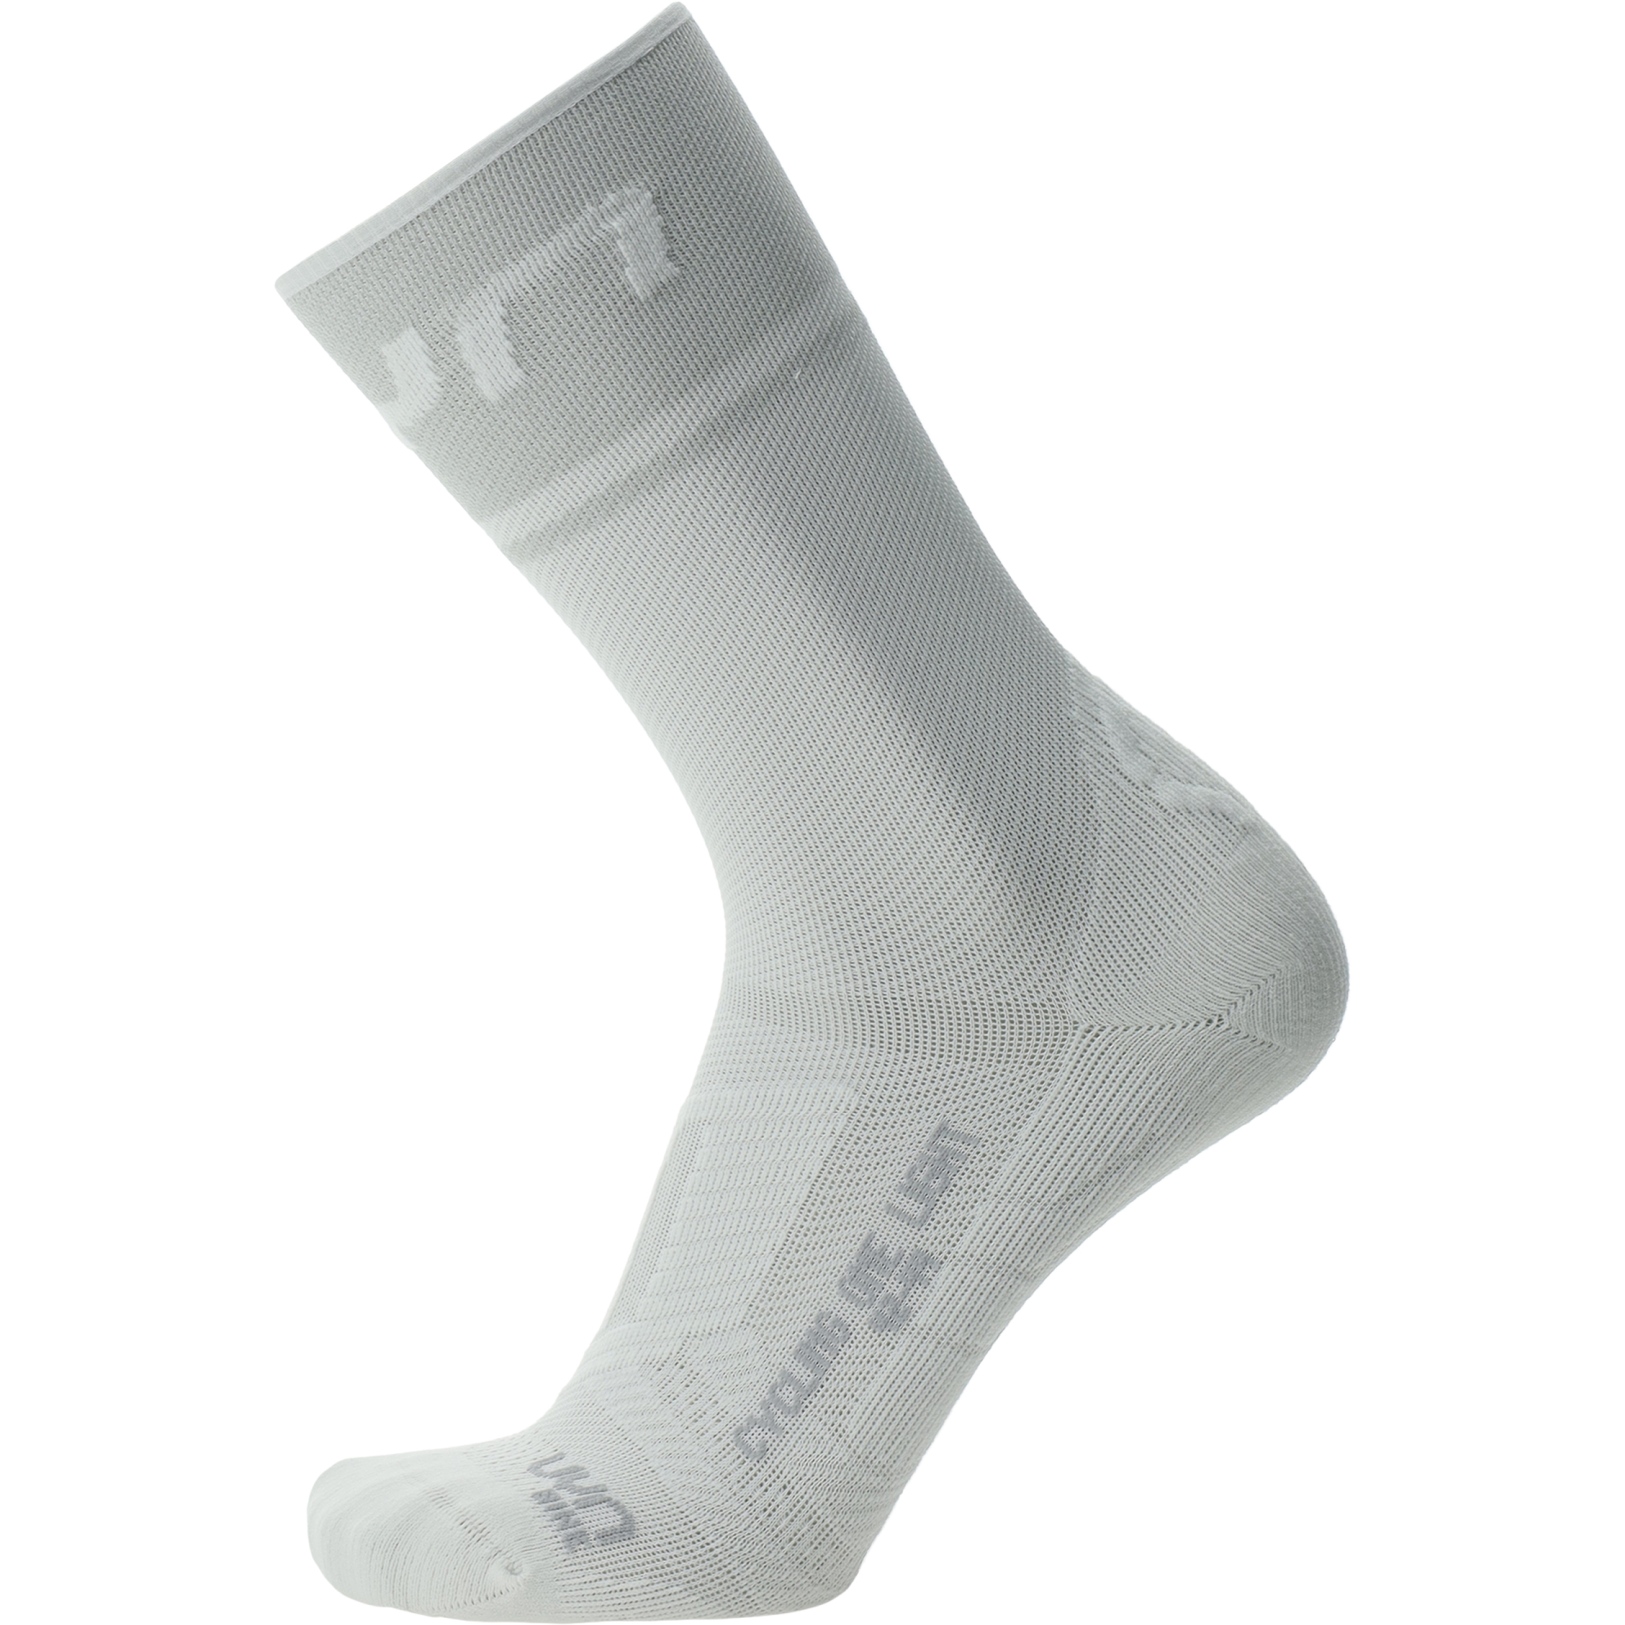 Produktbild von UYN Cycling One Light Socken Herren - Weiß/Silber